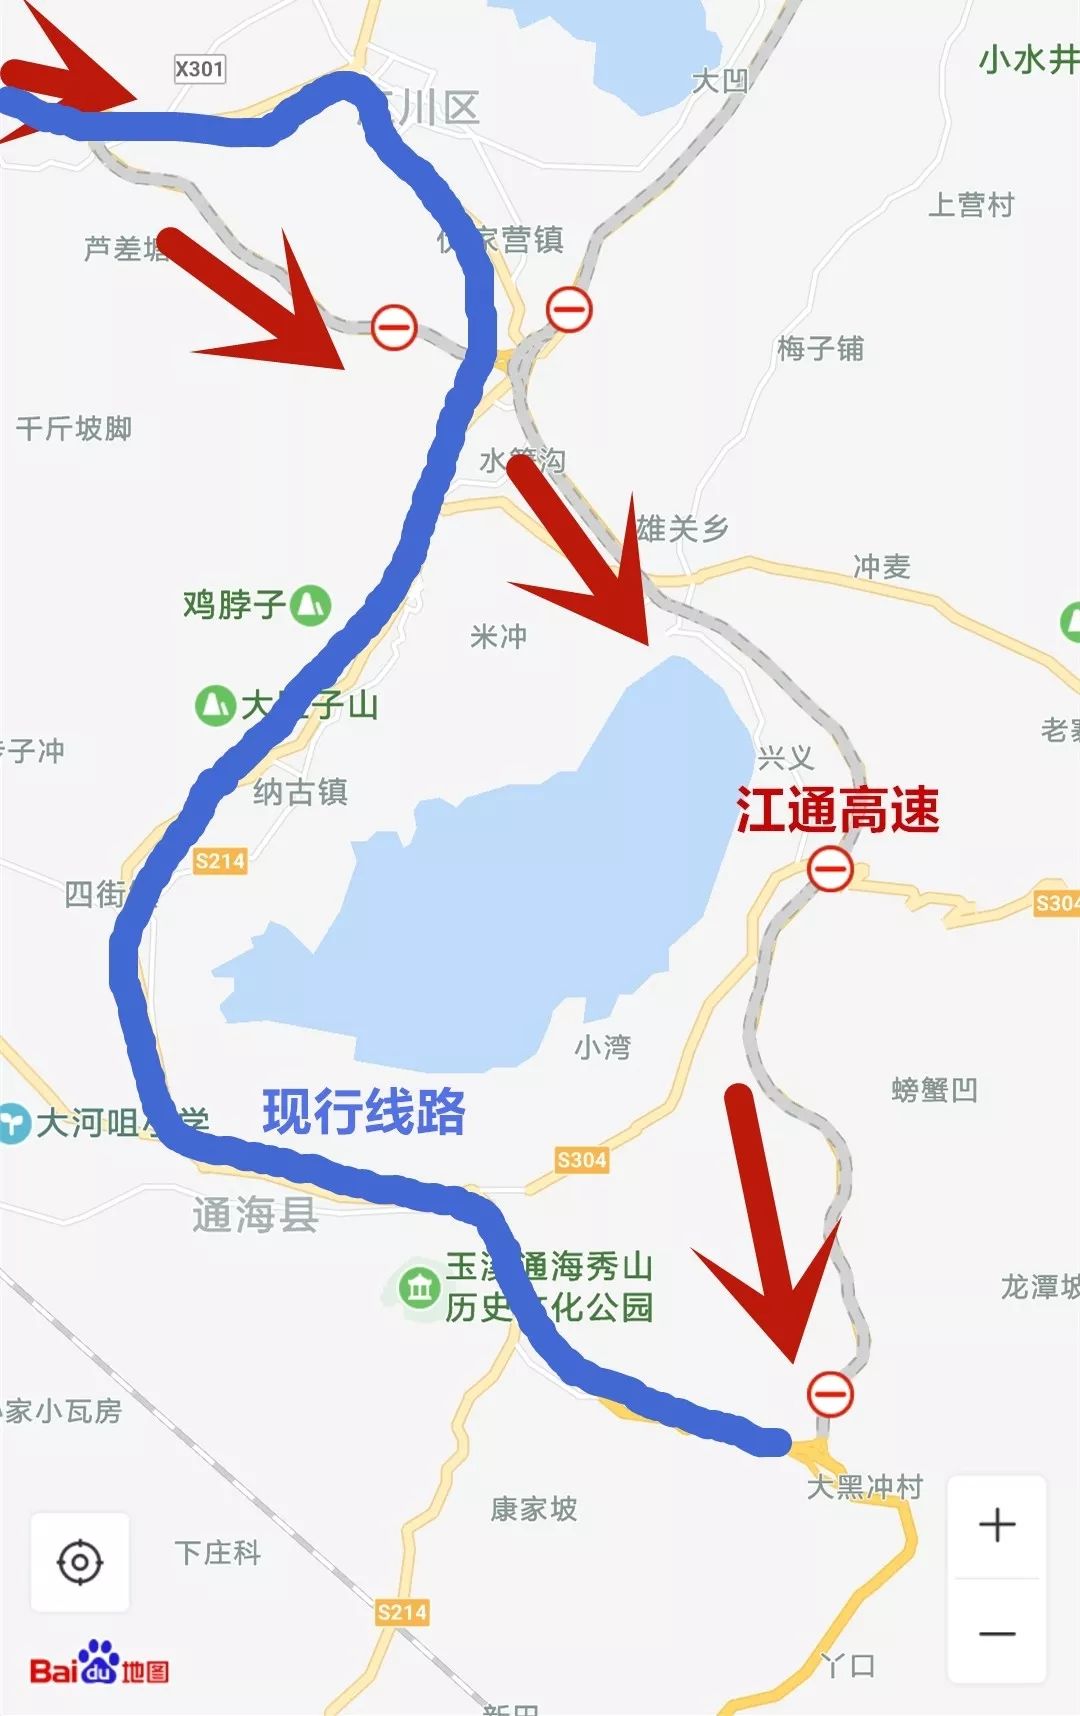 生活 正文  从江川,华宁,通海三地中间起接通建高速公路 节假日出行的